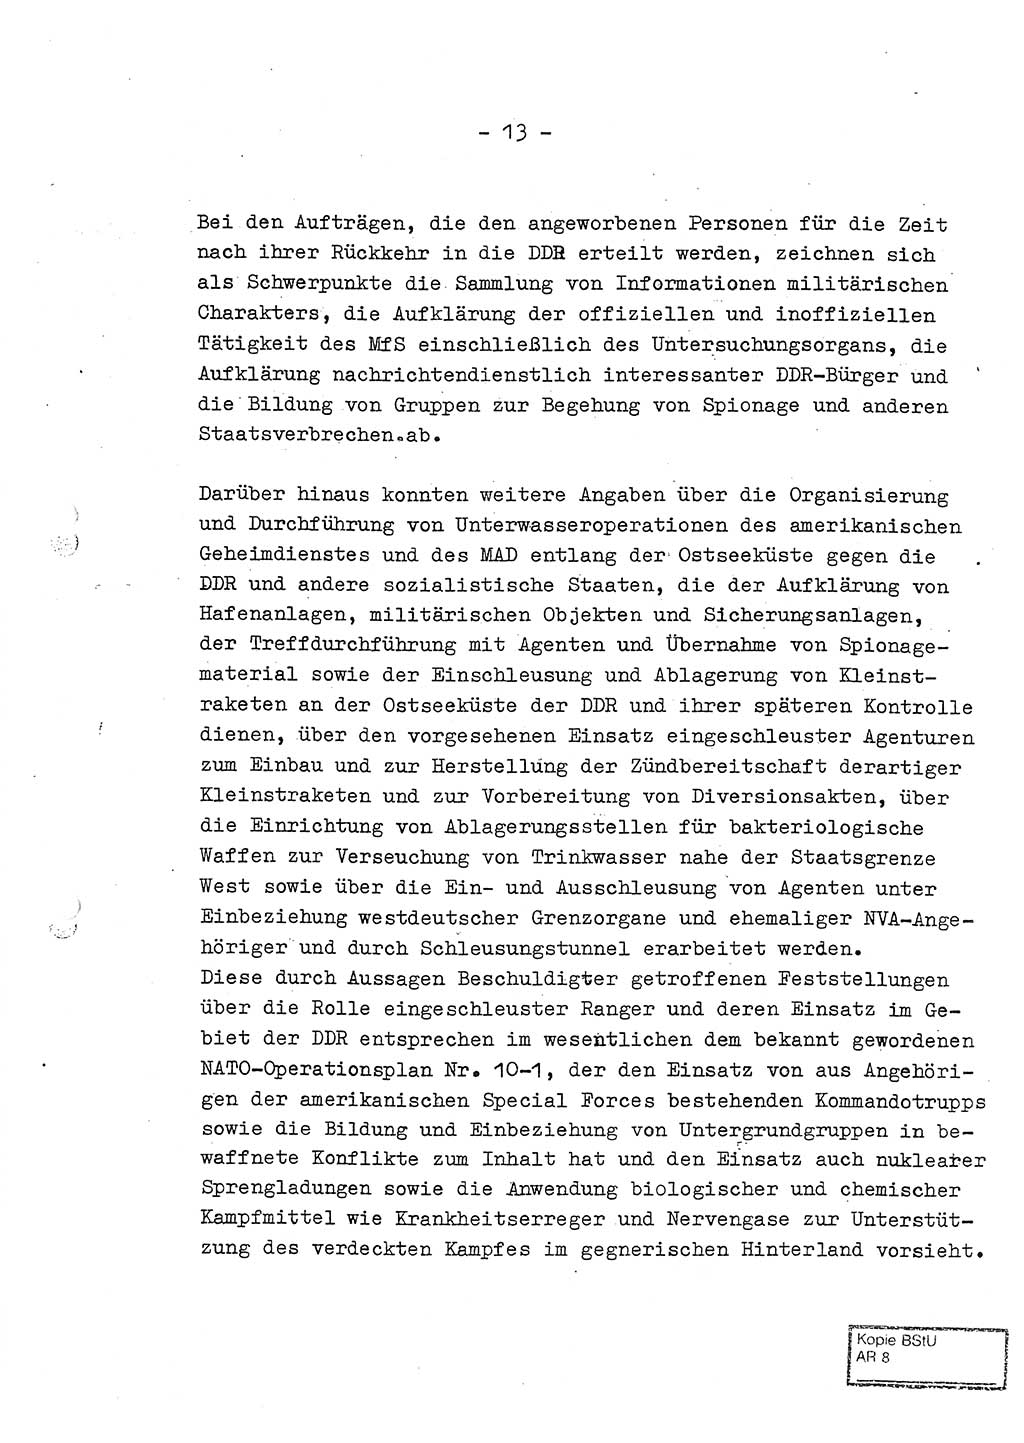 Jahresbericht der Hauptabteilung (HA) Ⅸ 1969 des Ministeriums für Staatssicherheit (MfS) der Deutschen Demokratischen Republik (DDR), Berlin 1970, Seite 13 (J.-Ber. MfS DDR HA Ⅸ /69 1970, S. 13)